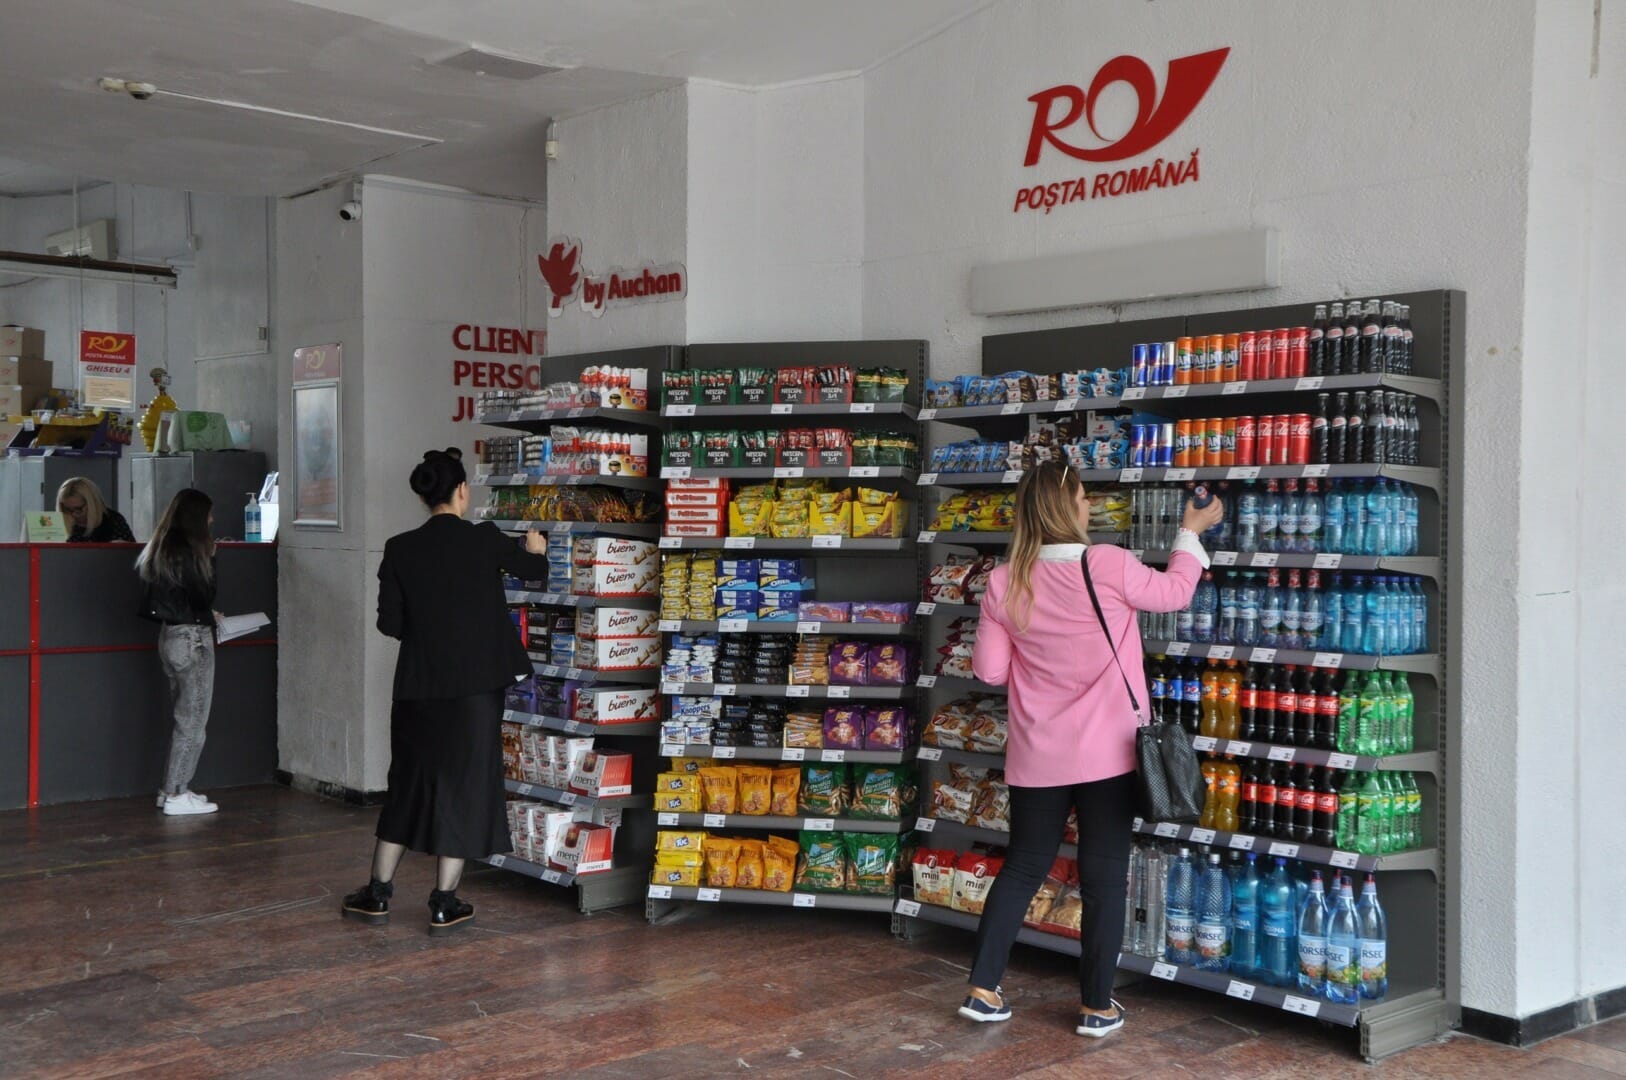 Poșta Română va vinde produse alimentare în oficiile poștale, în urma unui parteneriat cu Auchan